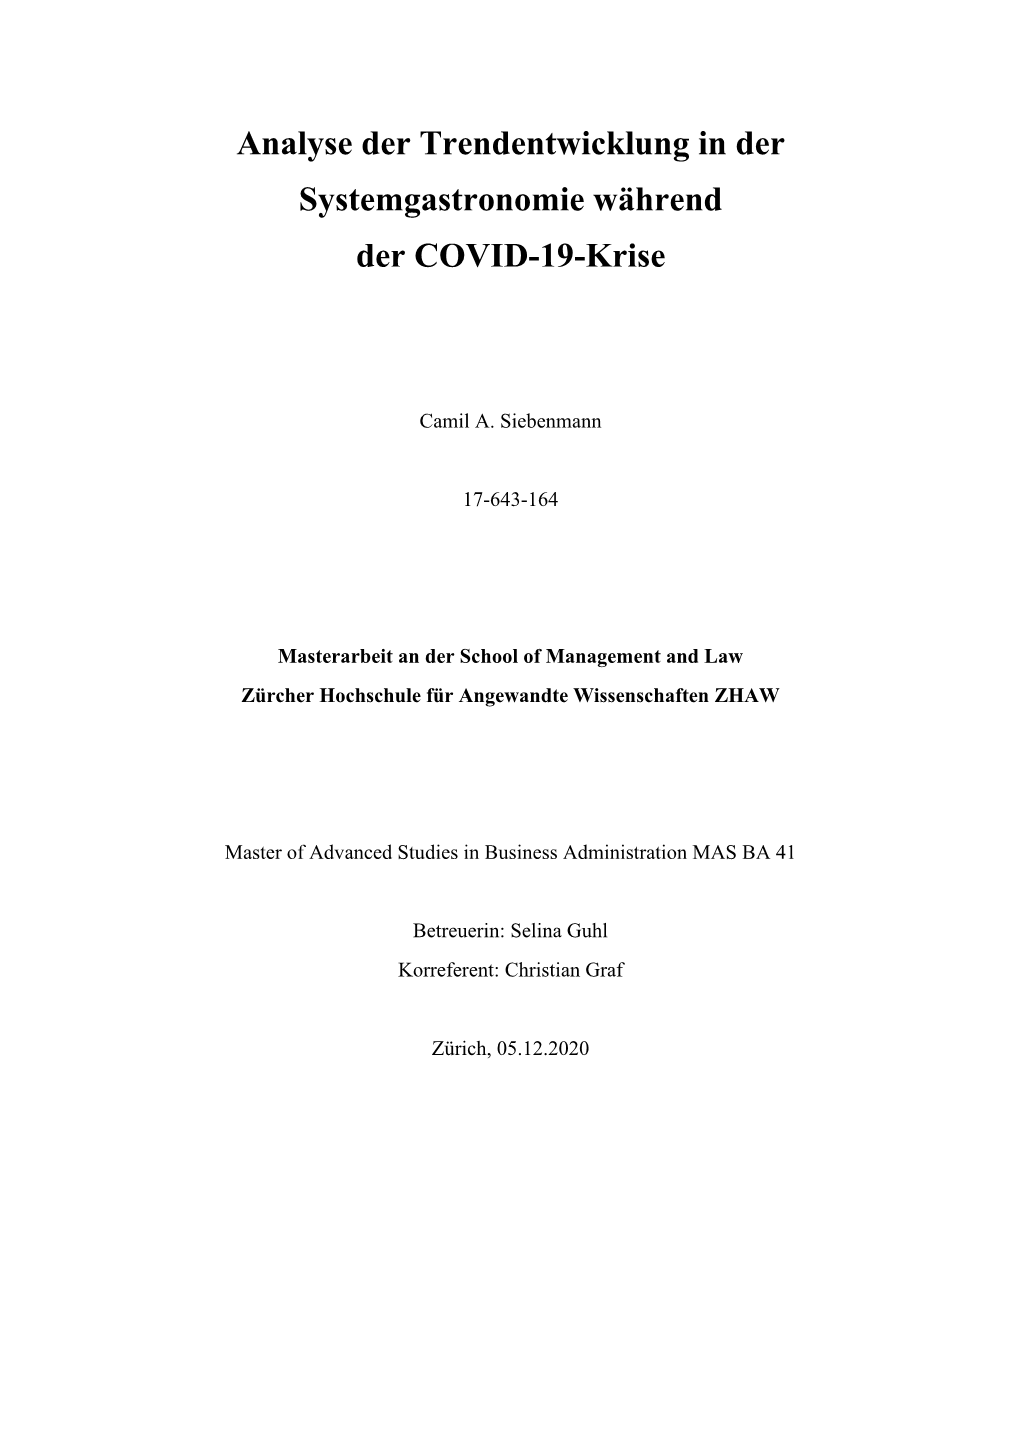 Analyse Der Trendentwicklung in Der Systemgastronomie Während Der COVID-19-Krise